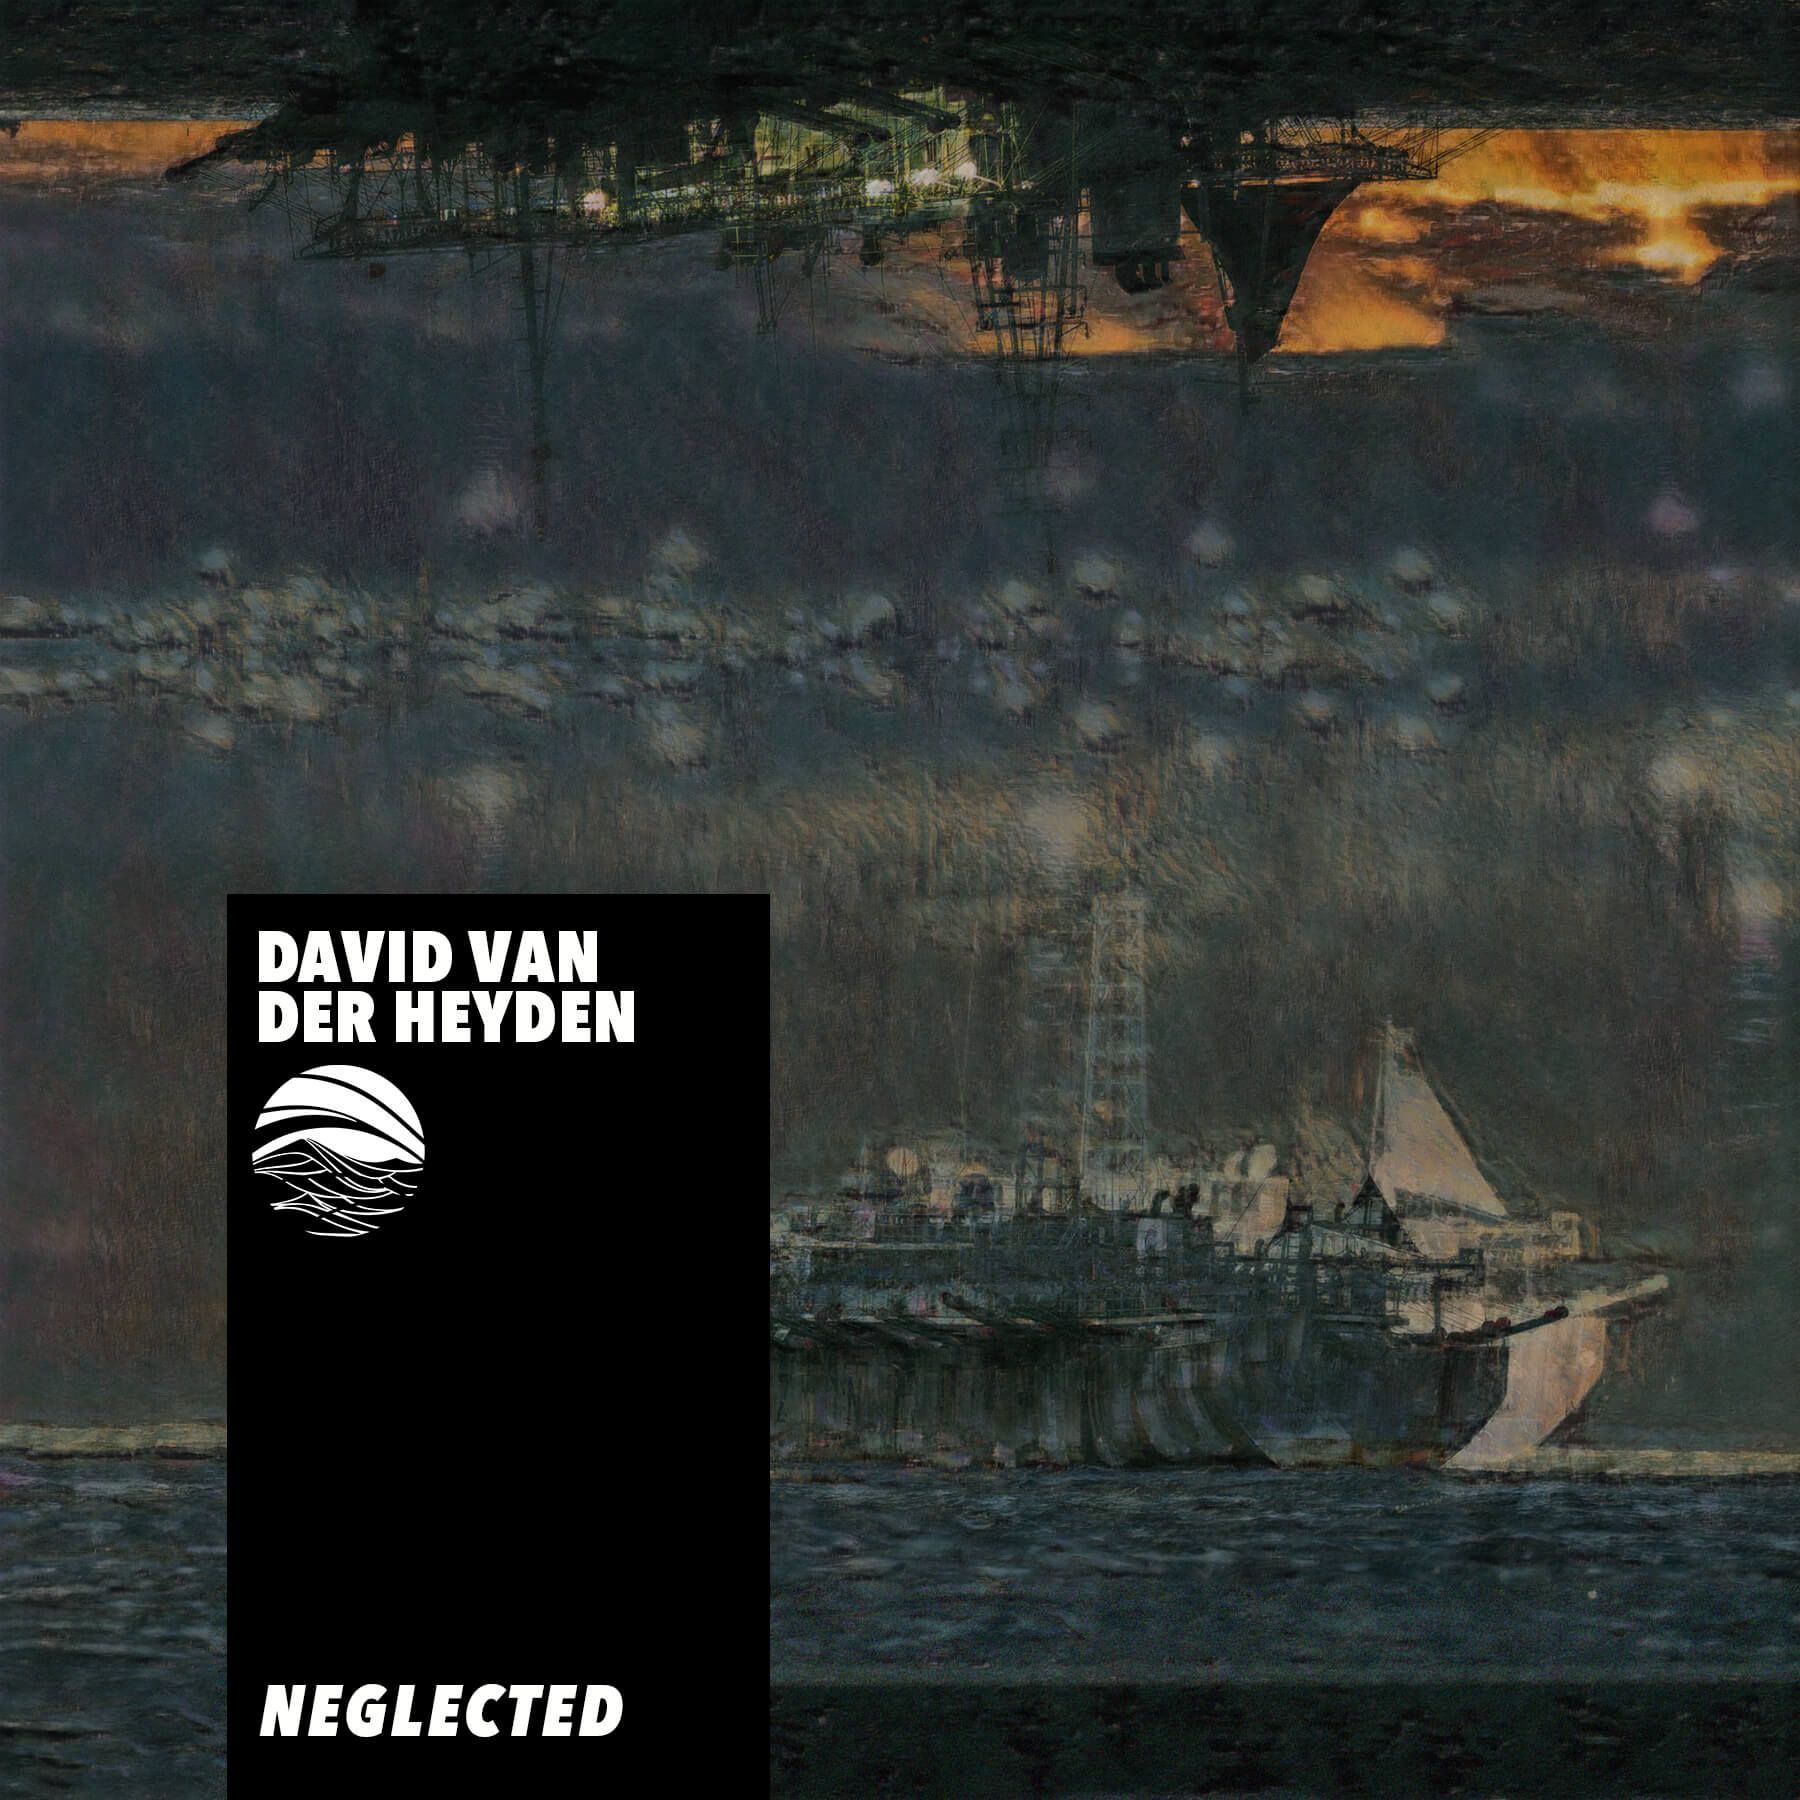 Neglected by David Van der Heyden